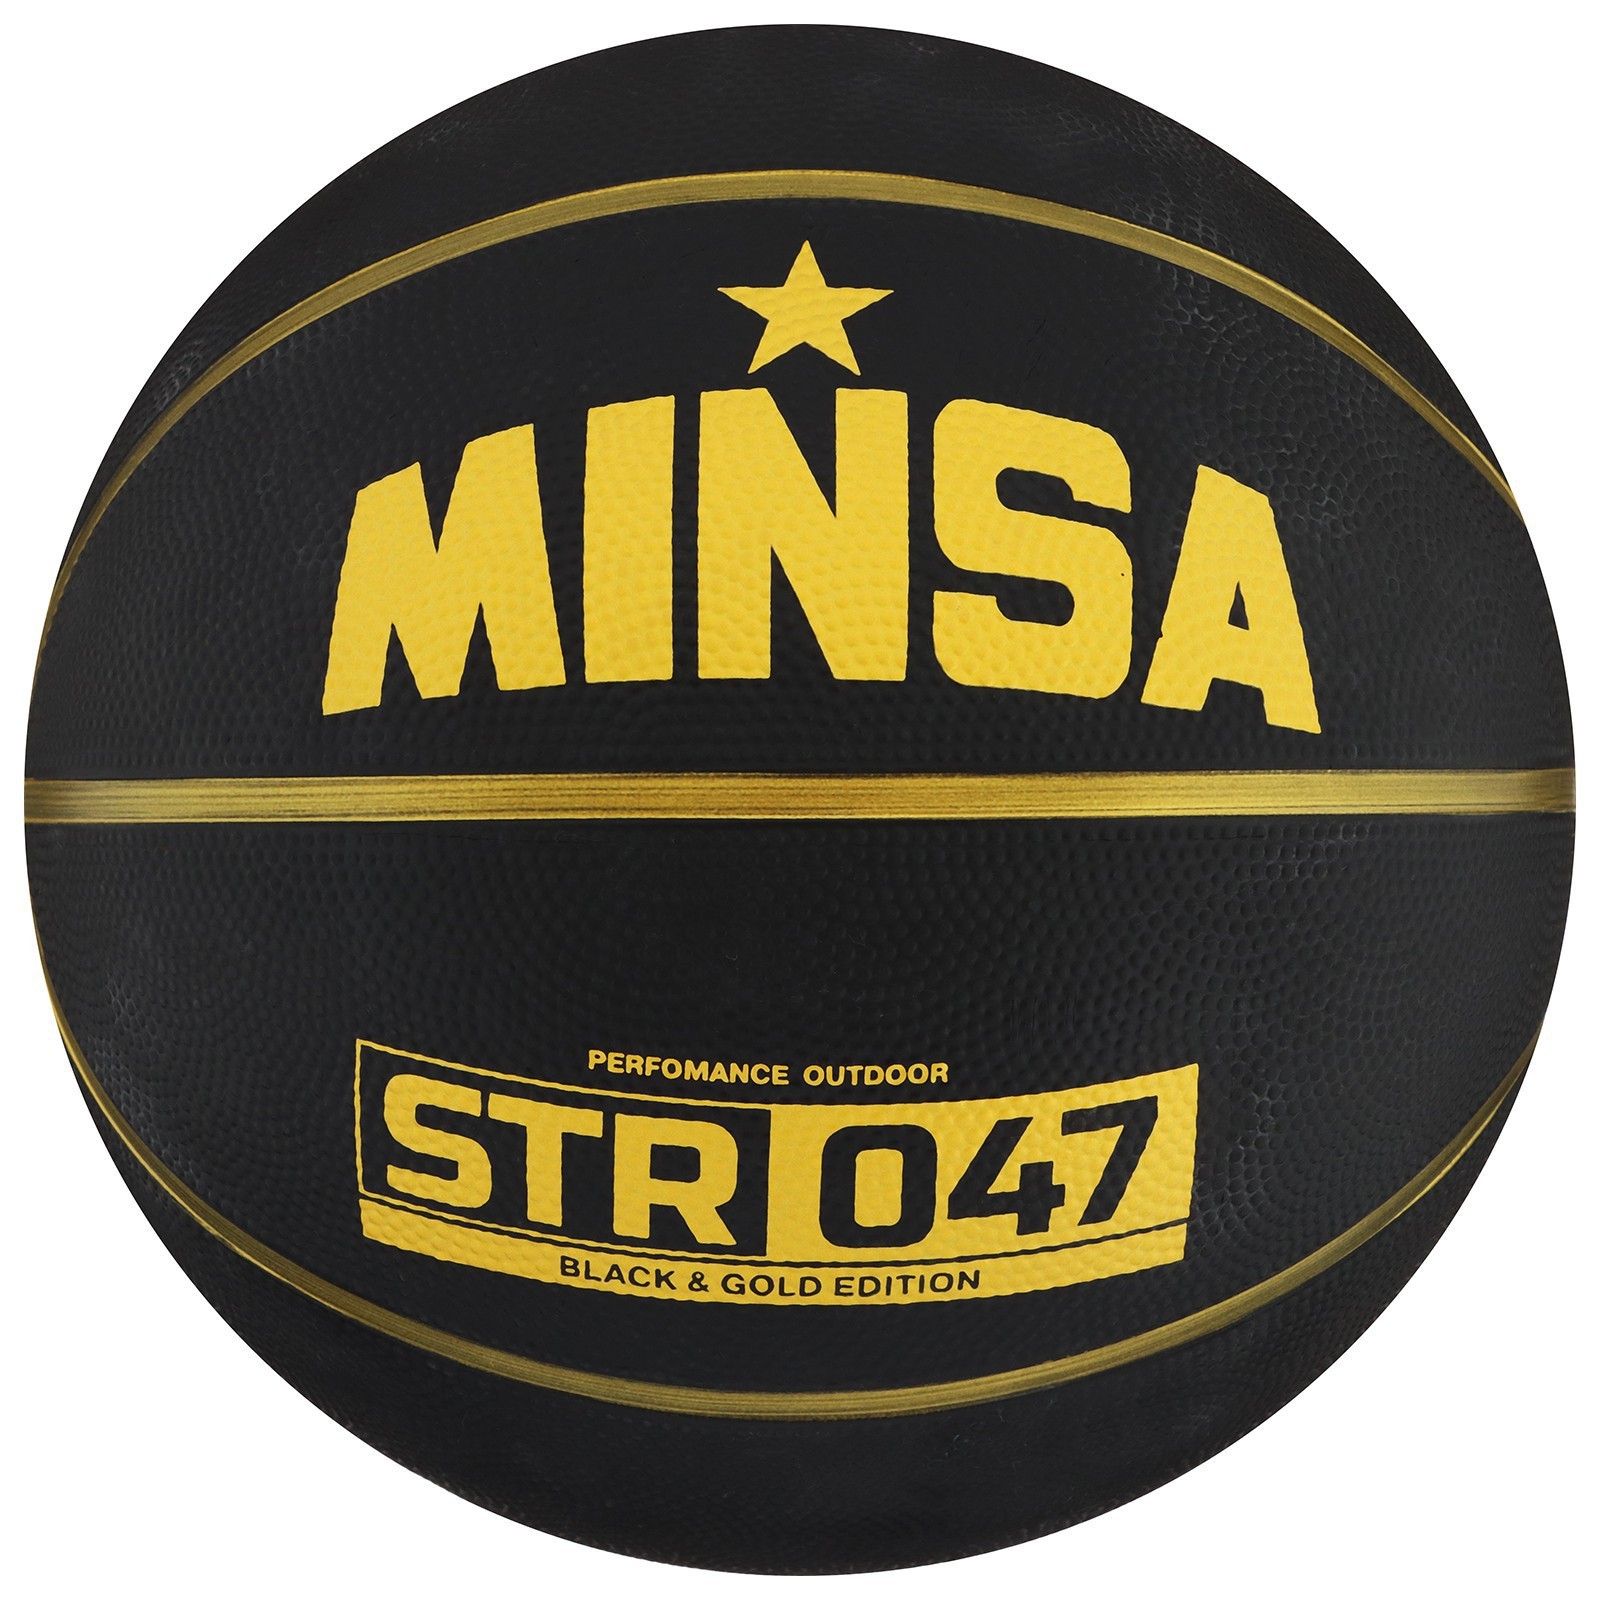 Баскетбольный мяч Minsa STR 047 размер 7 черный